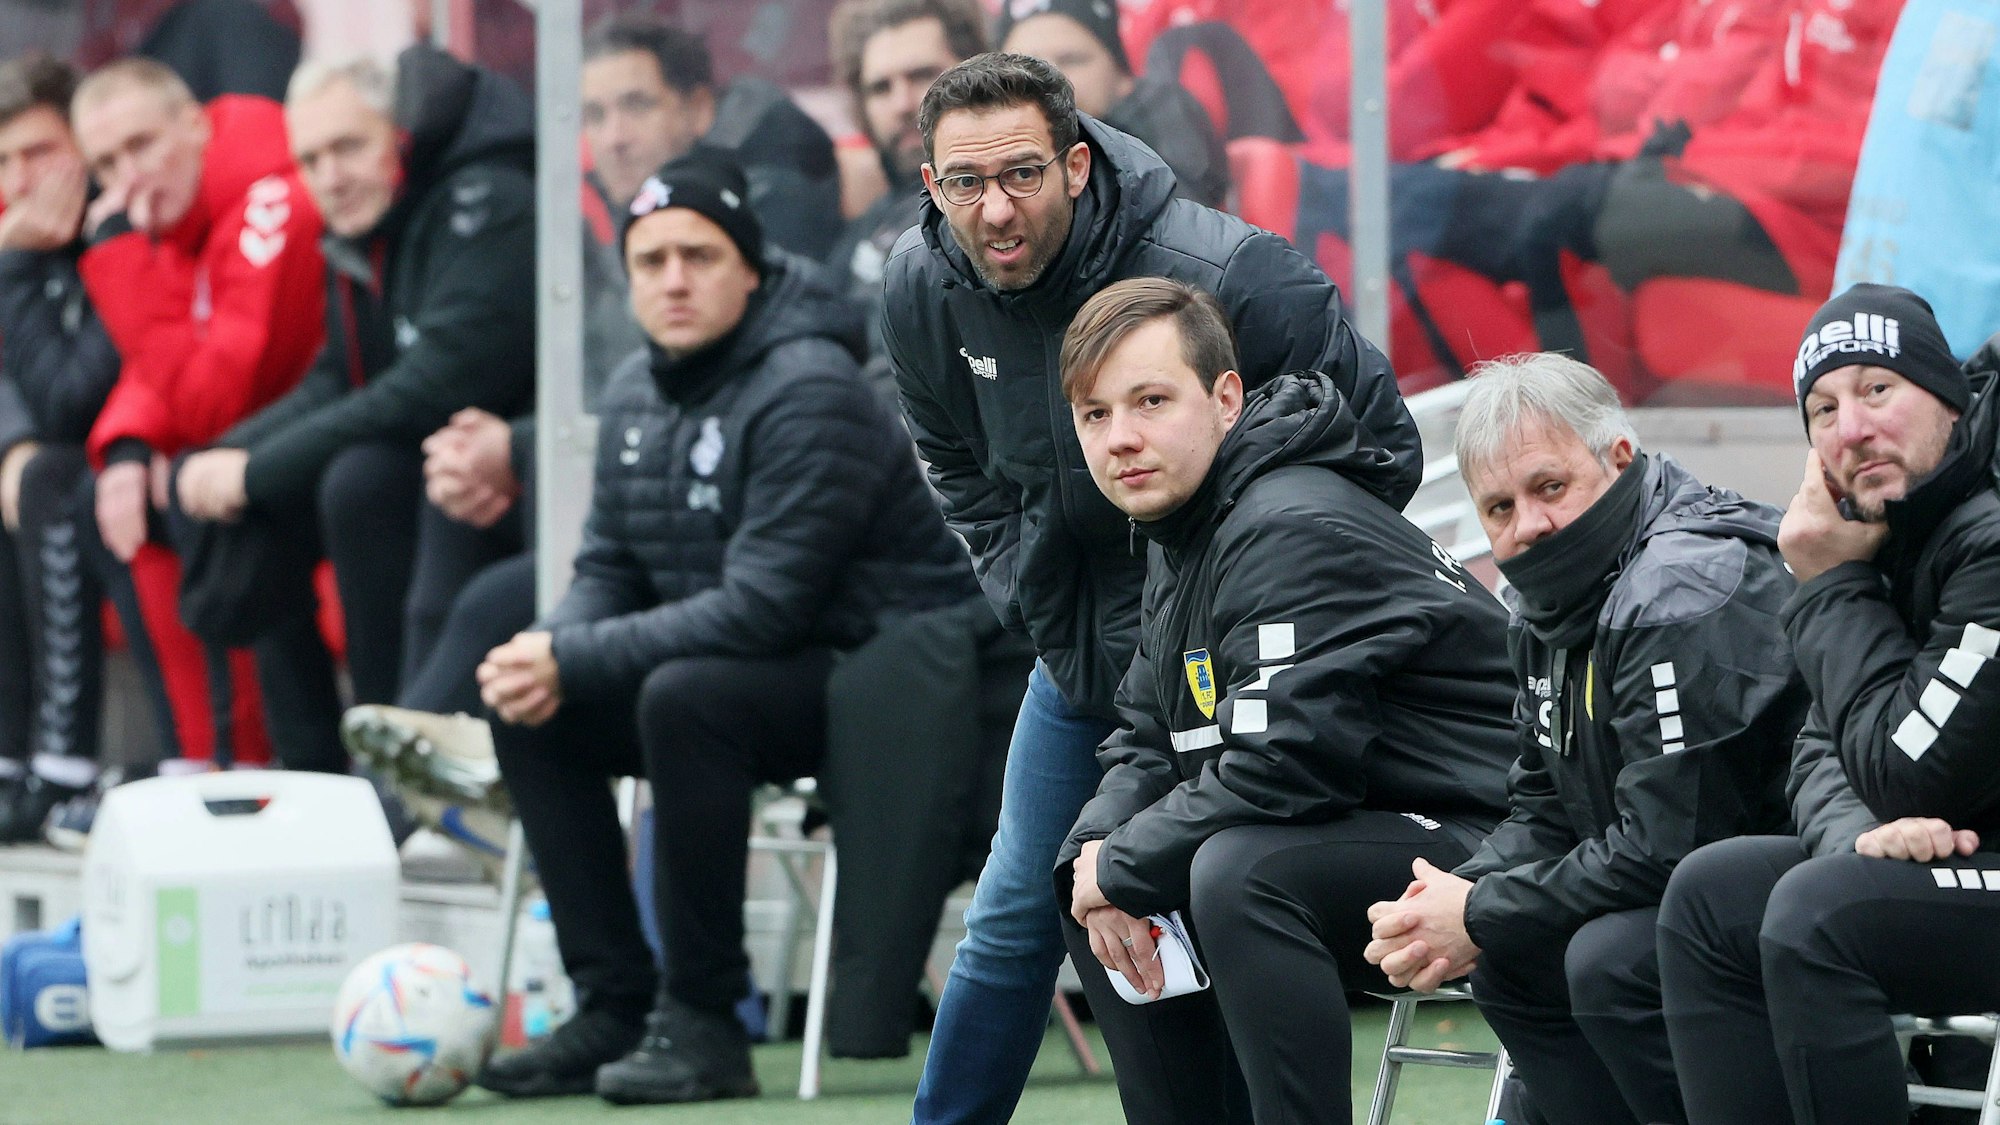 Boris Schommers steht mit anderen Vereinskollegen als Trainer am Spielfeldrand eines Fußballfeldes und verzieht konzentriert das Gesicht.